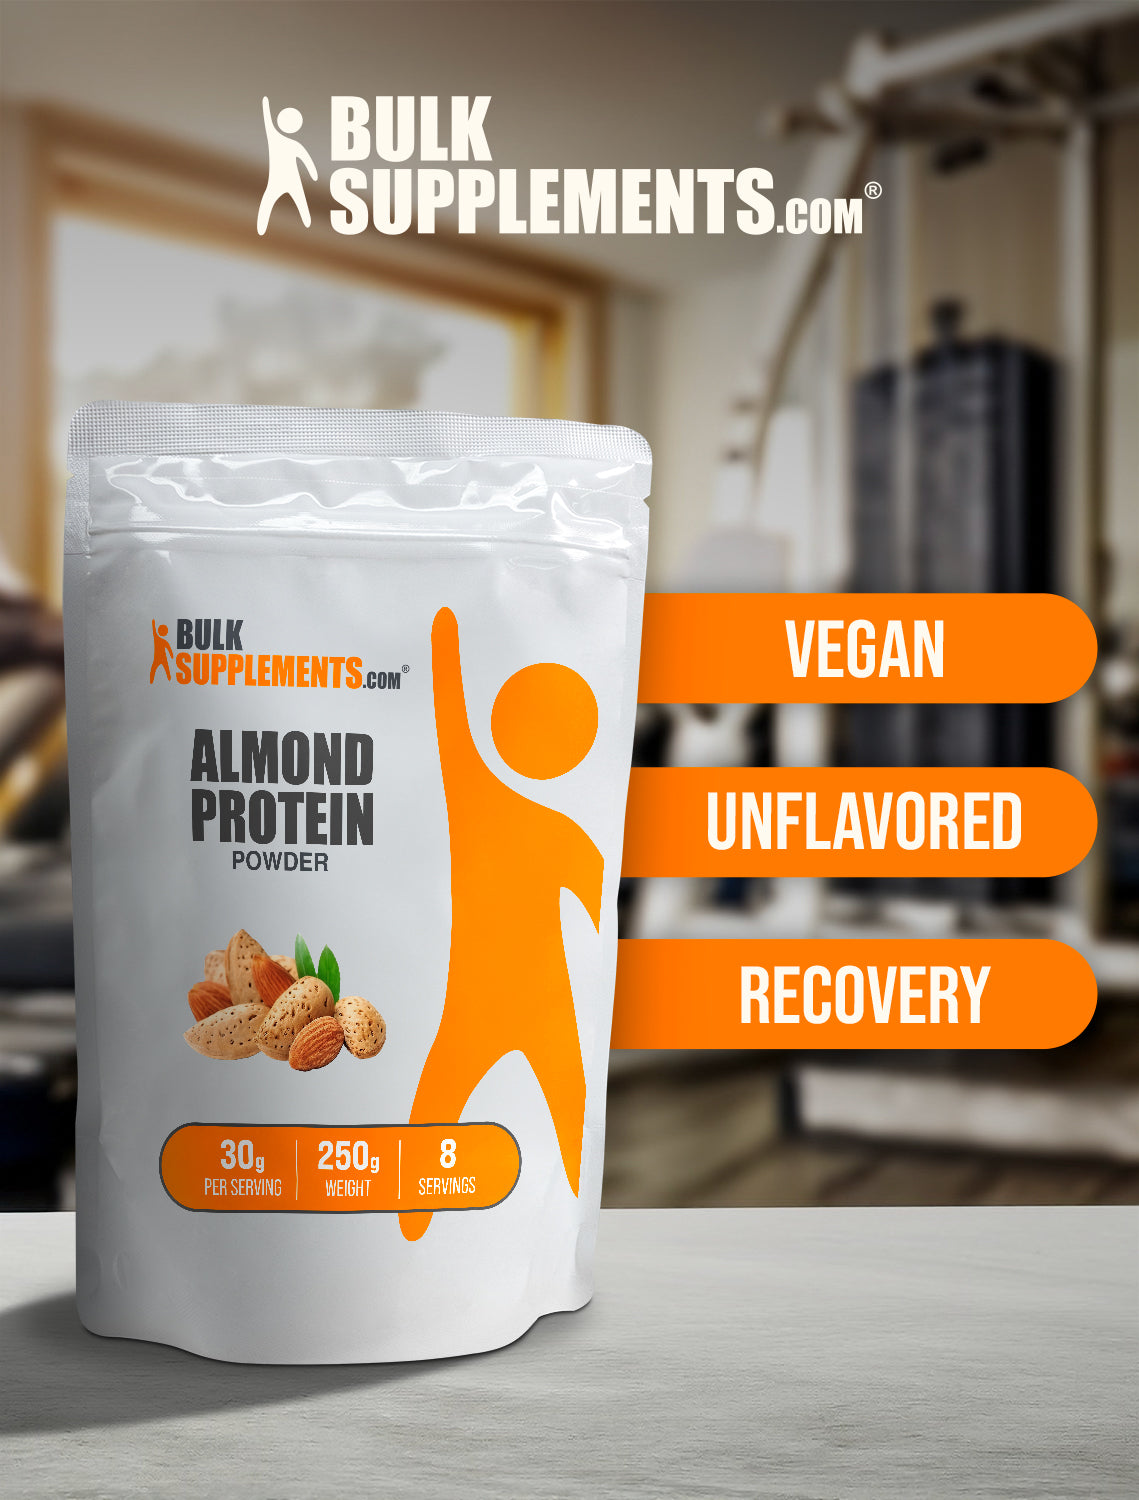 Almond protein powder 250g keywords image